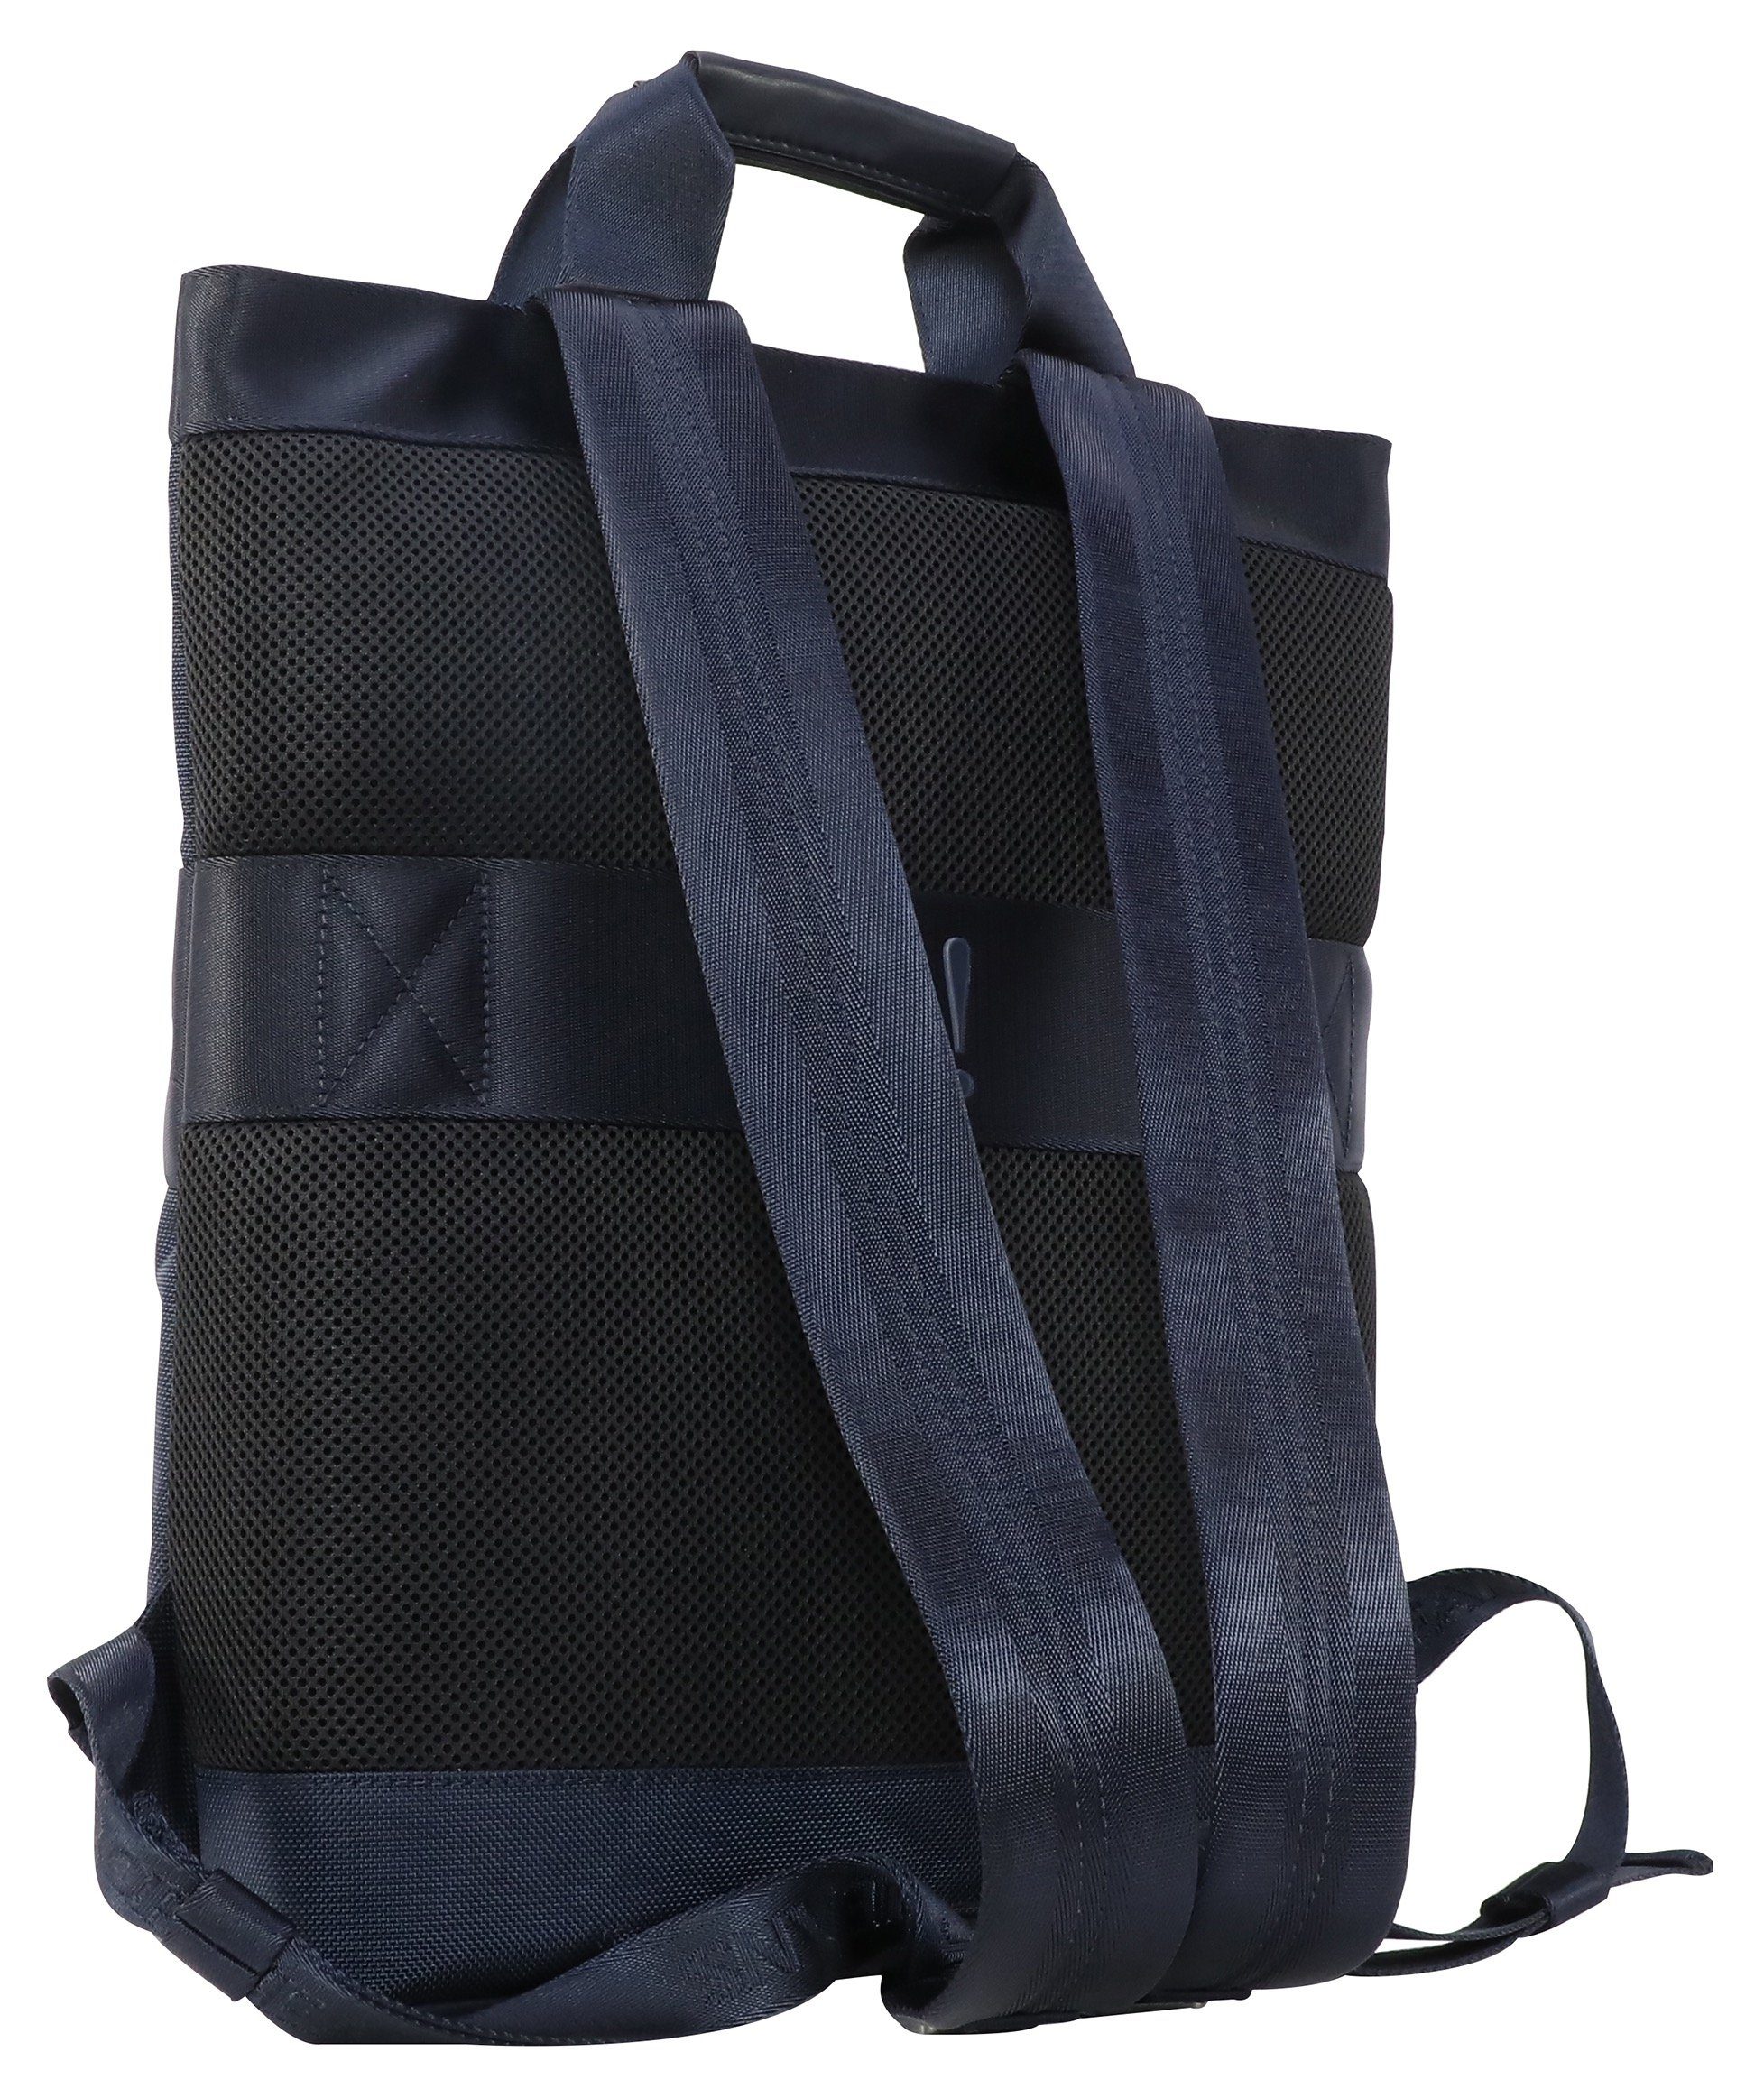 mit falk Jeans Joop Reißverschluss-Vortasche backpack svz, Cityrucksack modica darkblue